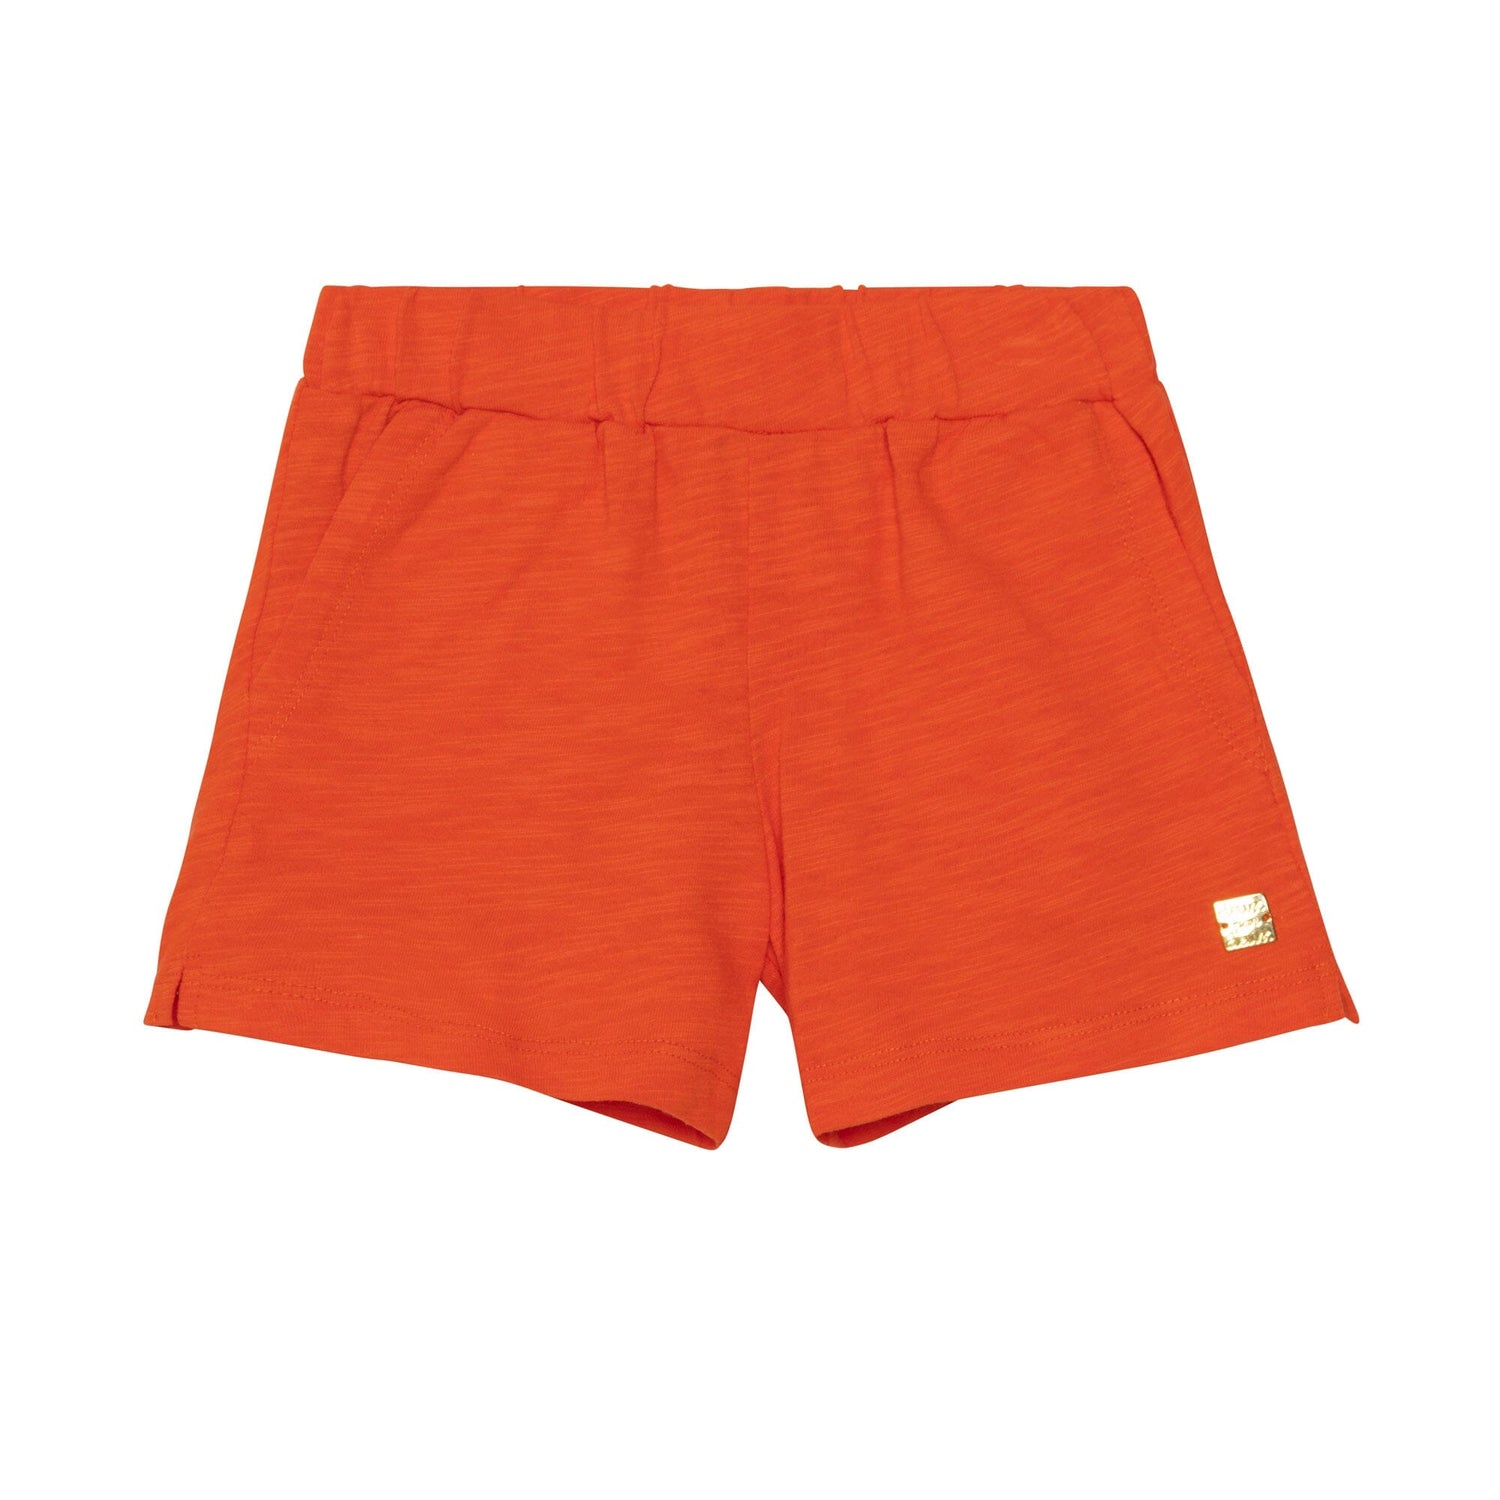 Short With Pocket Orange - E30L27_818